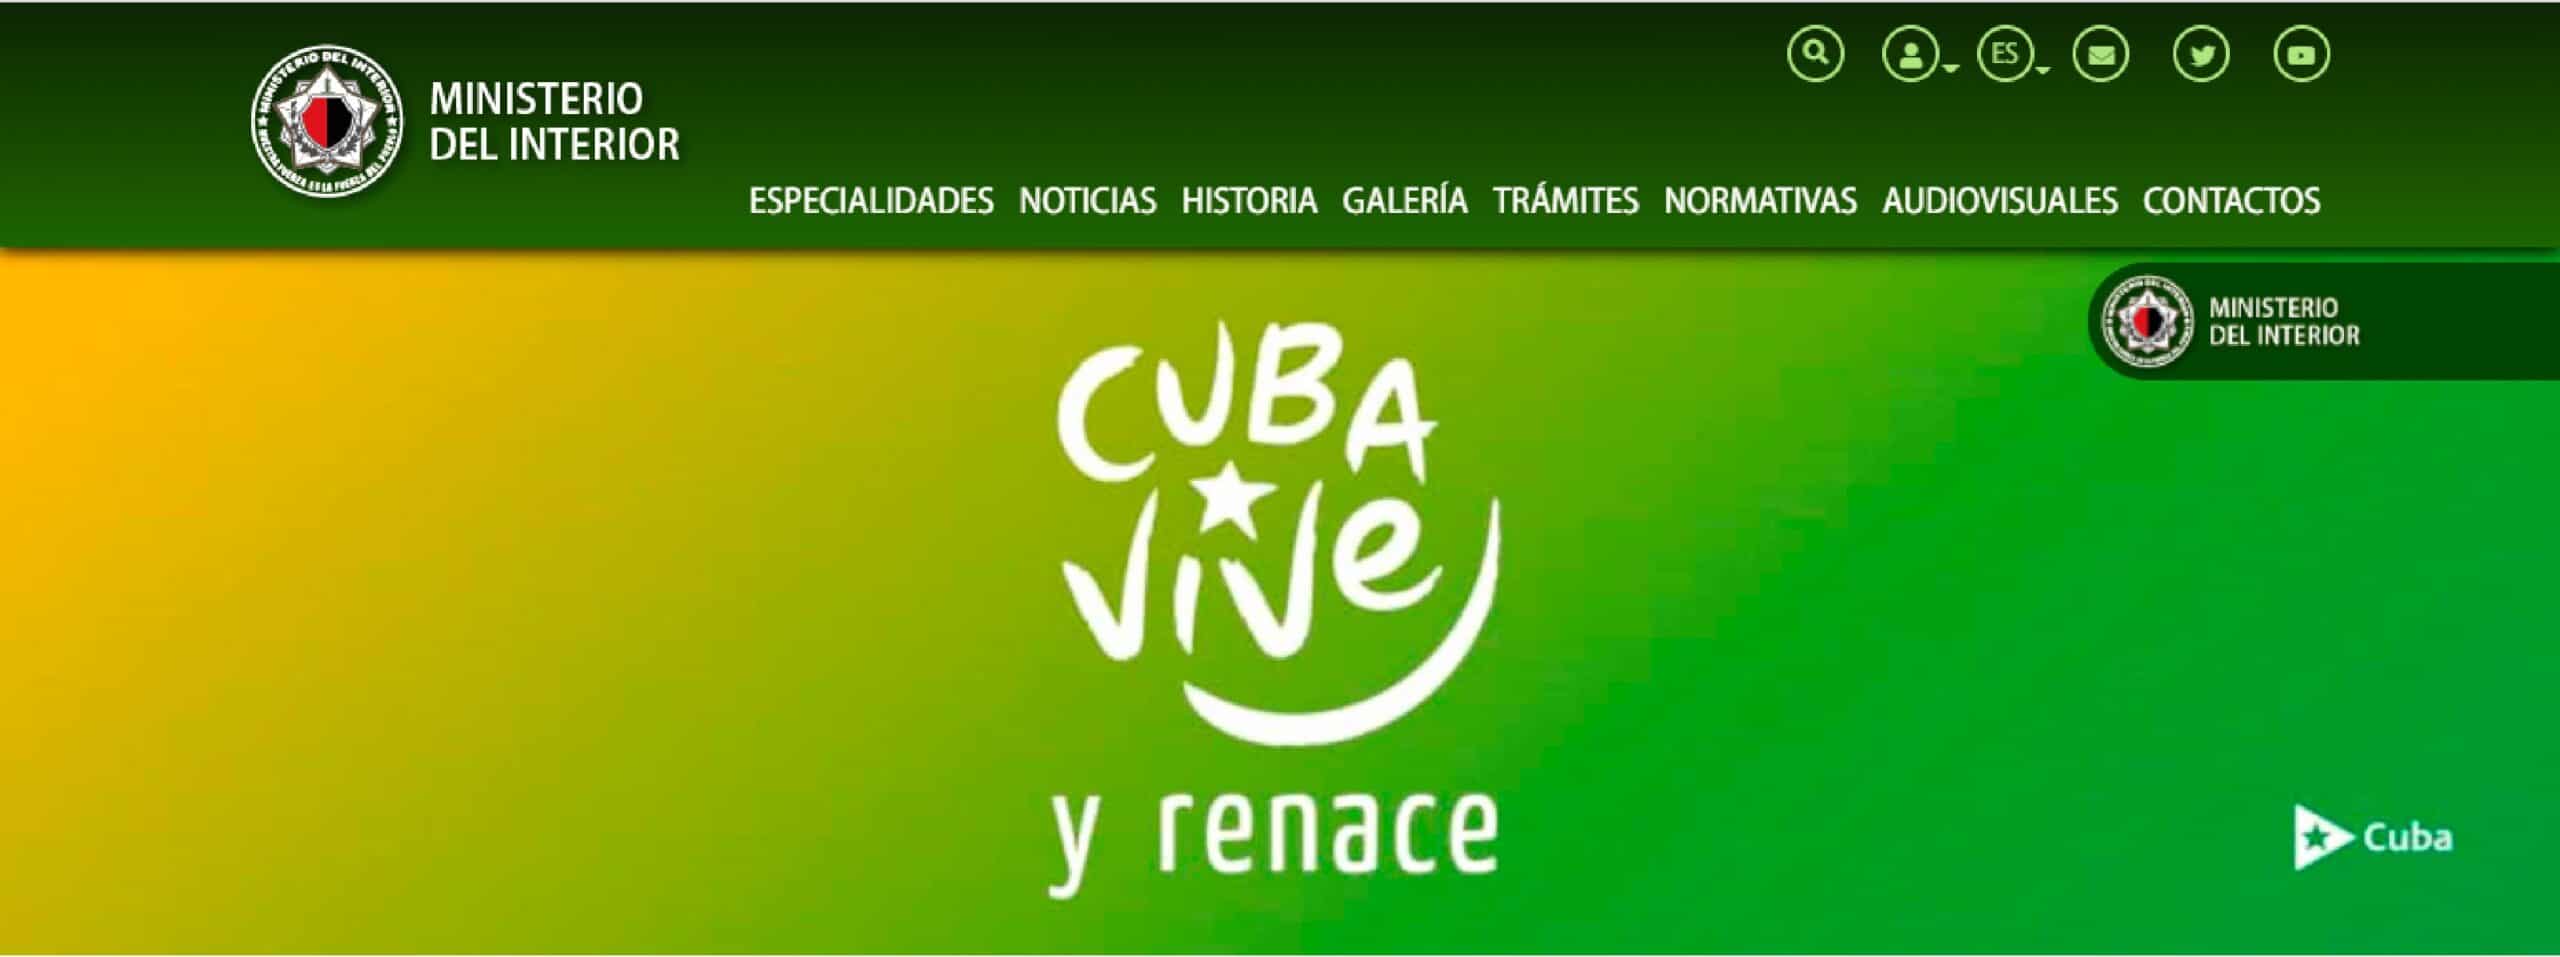 Nuevos servicios digitales para la atencion a la ciudadania en Cuba